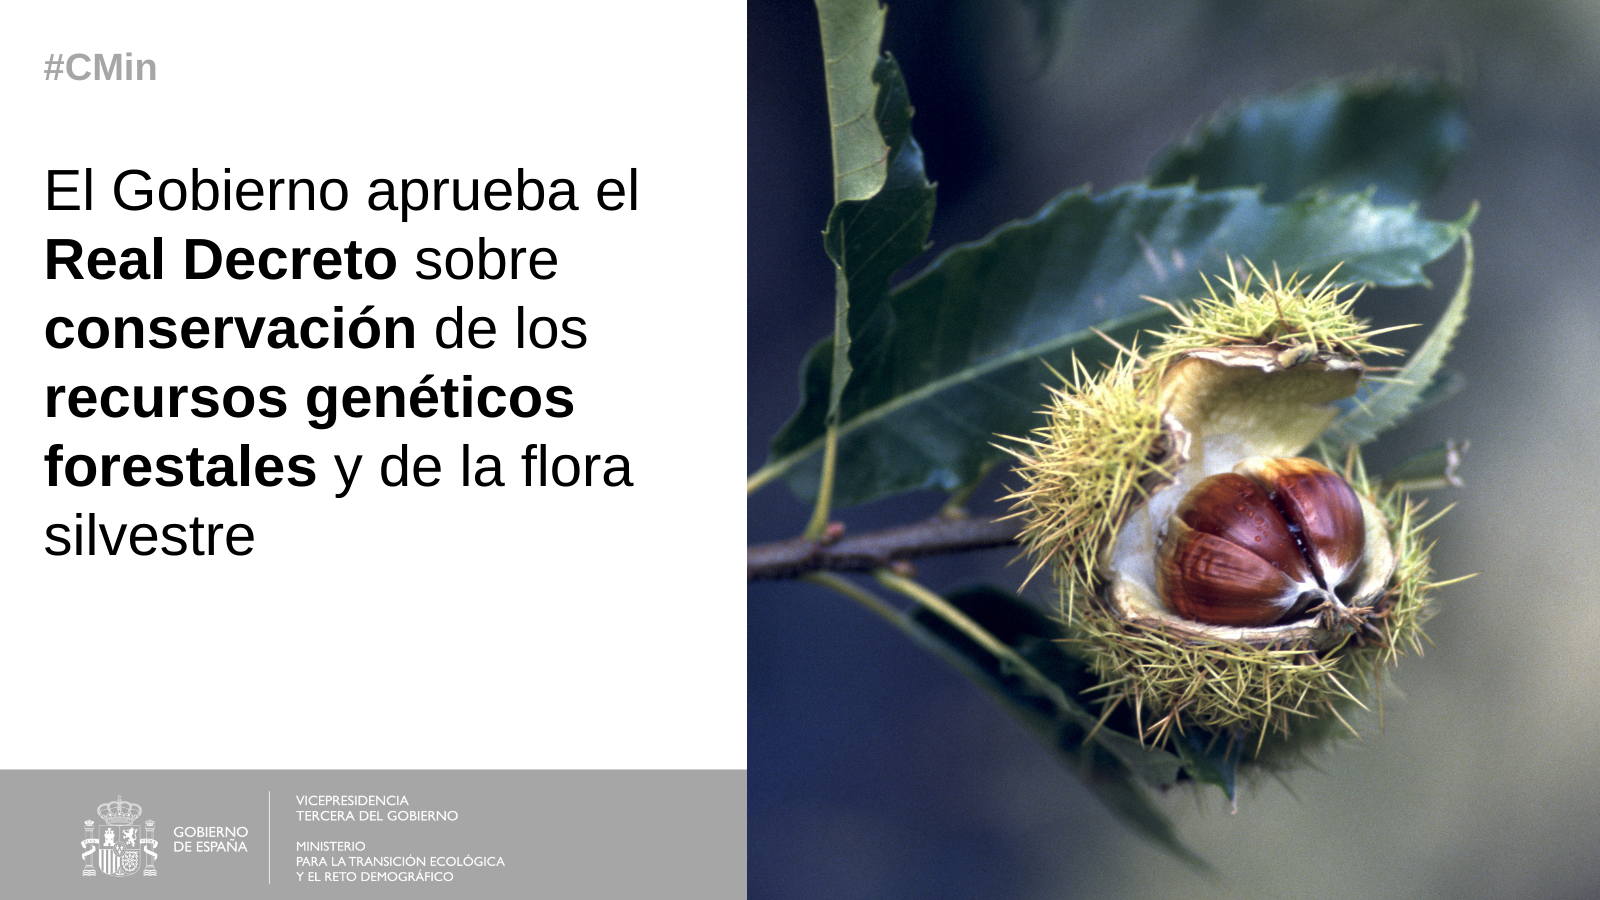 CMin Recursos Genéticos ForestaleEl Gobierno aprueba el Real Decreto sobre conservación de los recursos genéticos forestales y de la flora silvestre 

